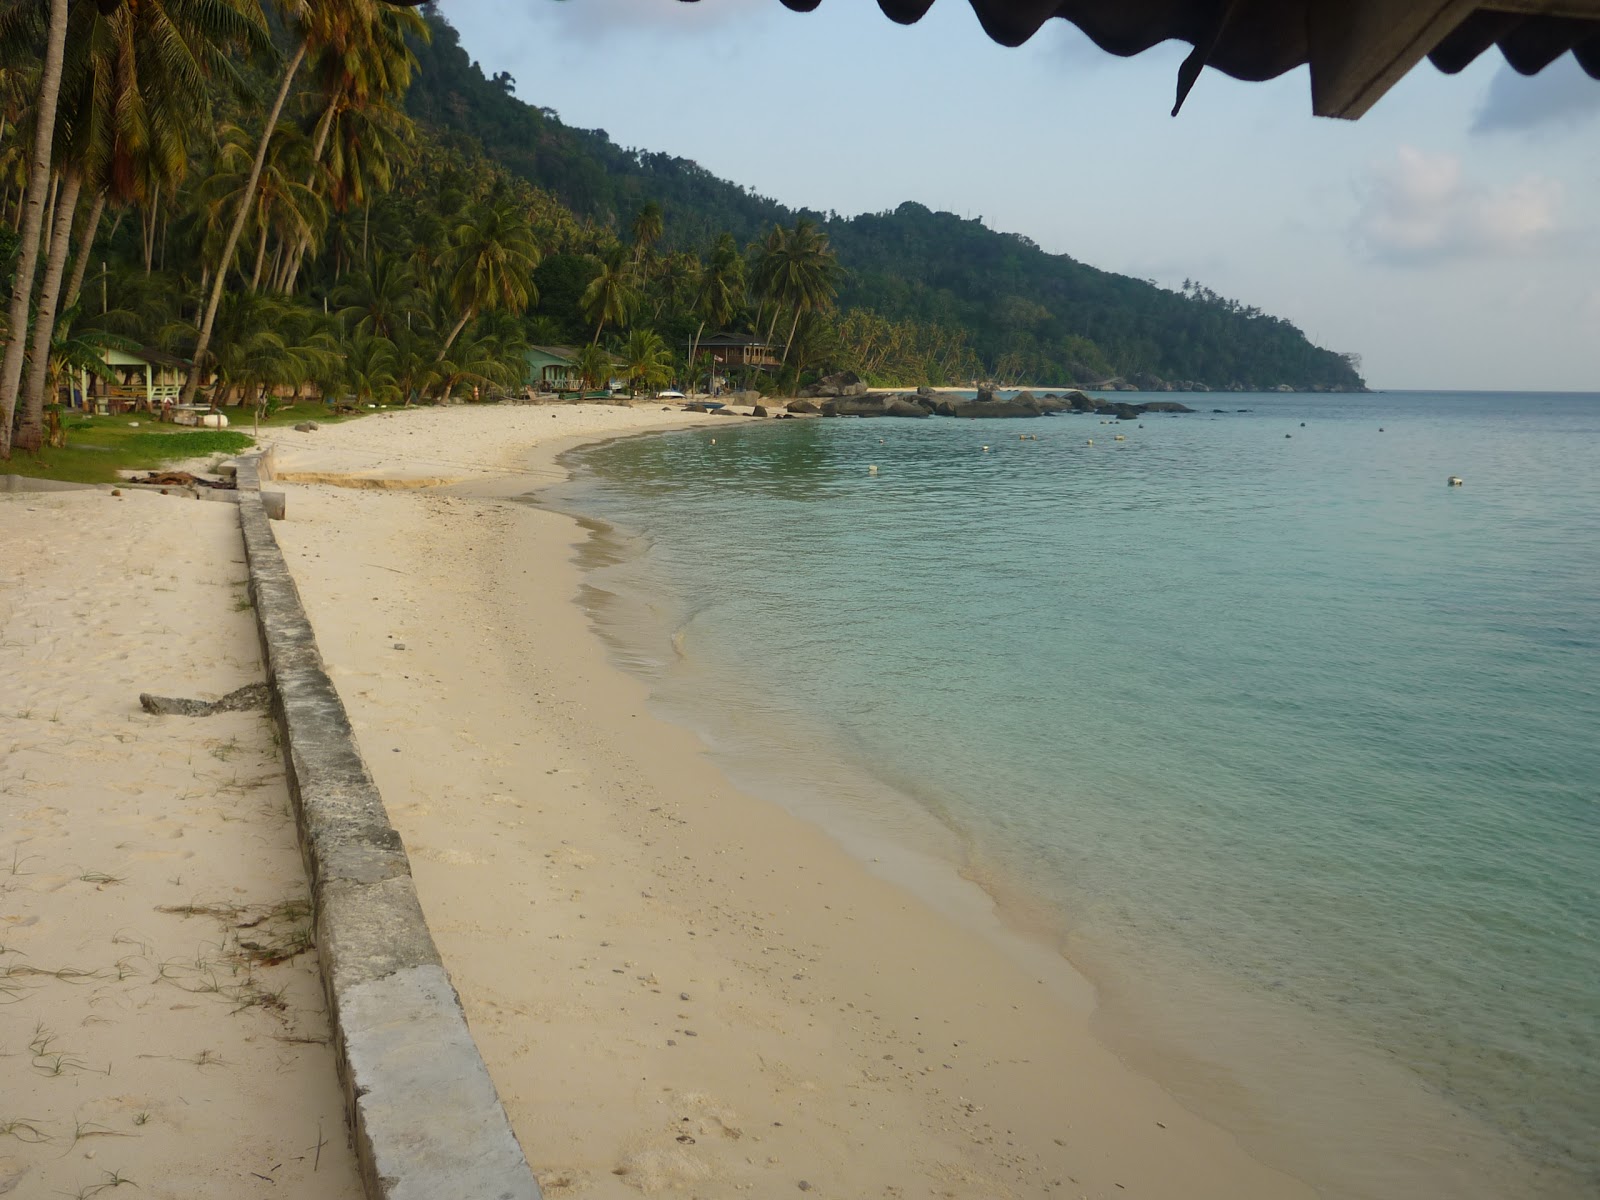 Pemanggil Holiday'in fotoğrafı parlak kum yüzey ile